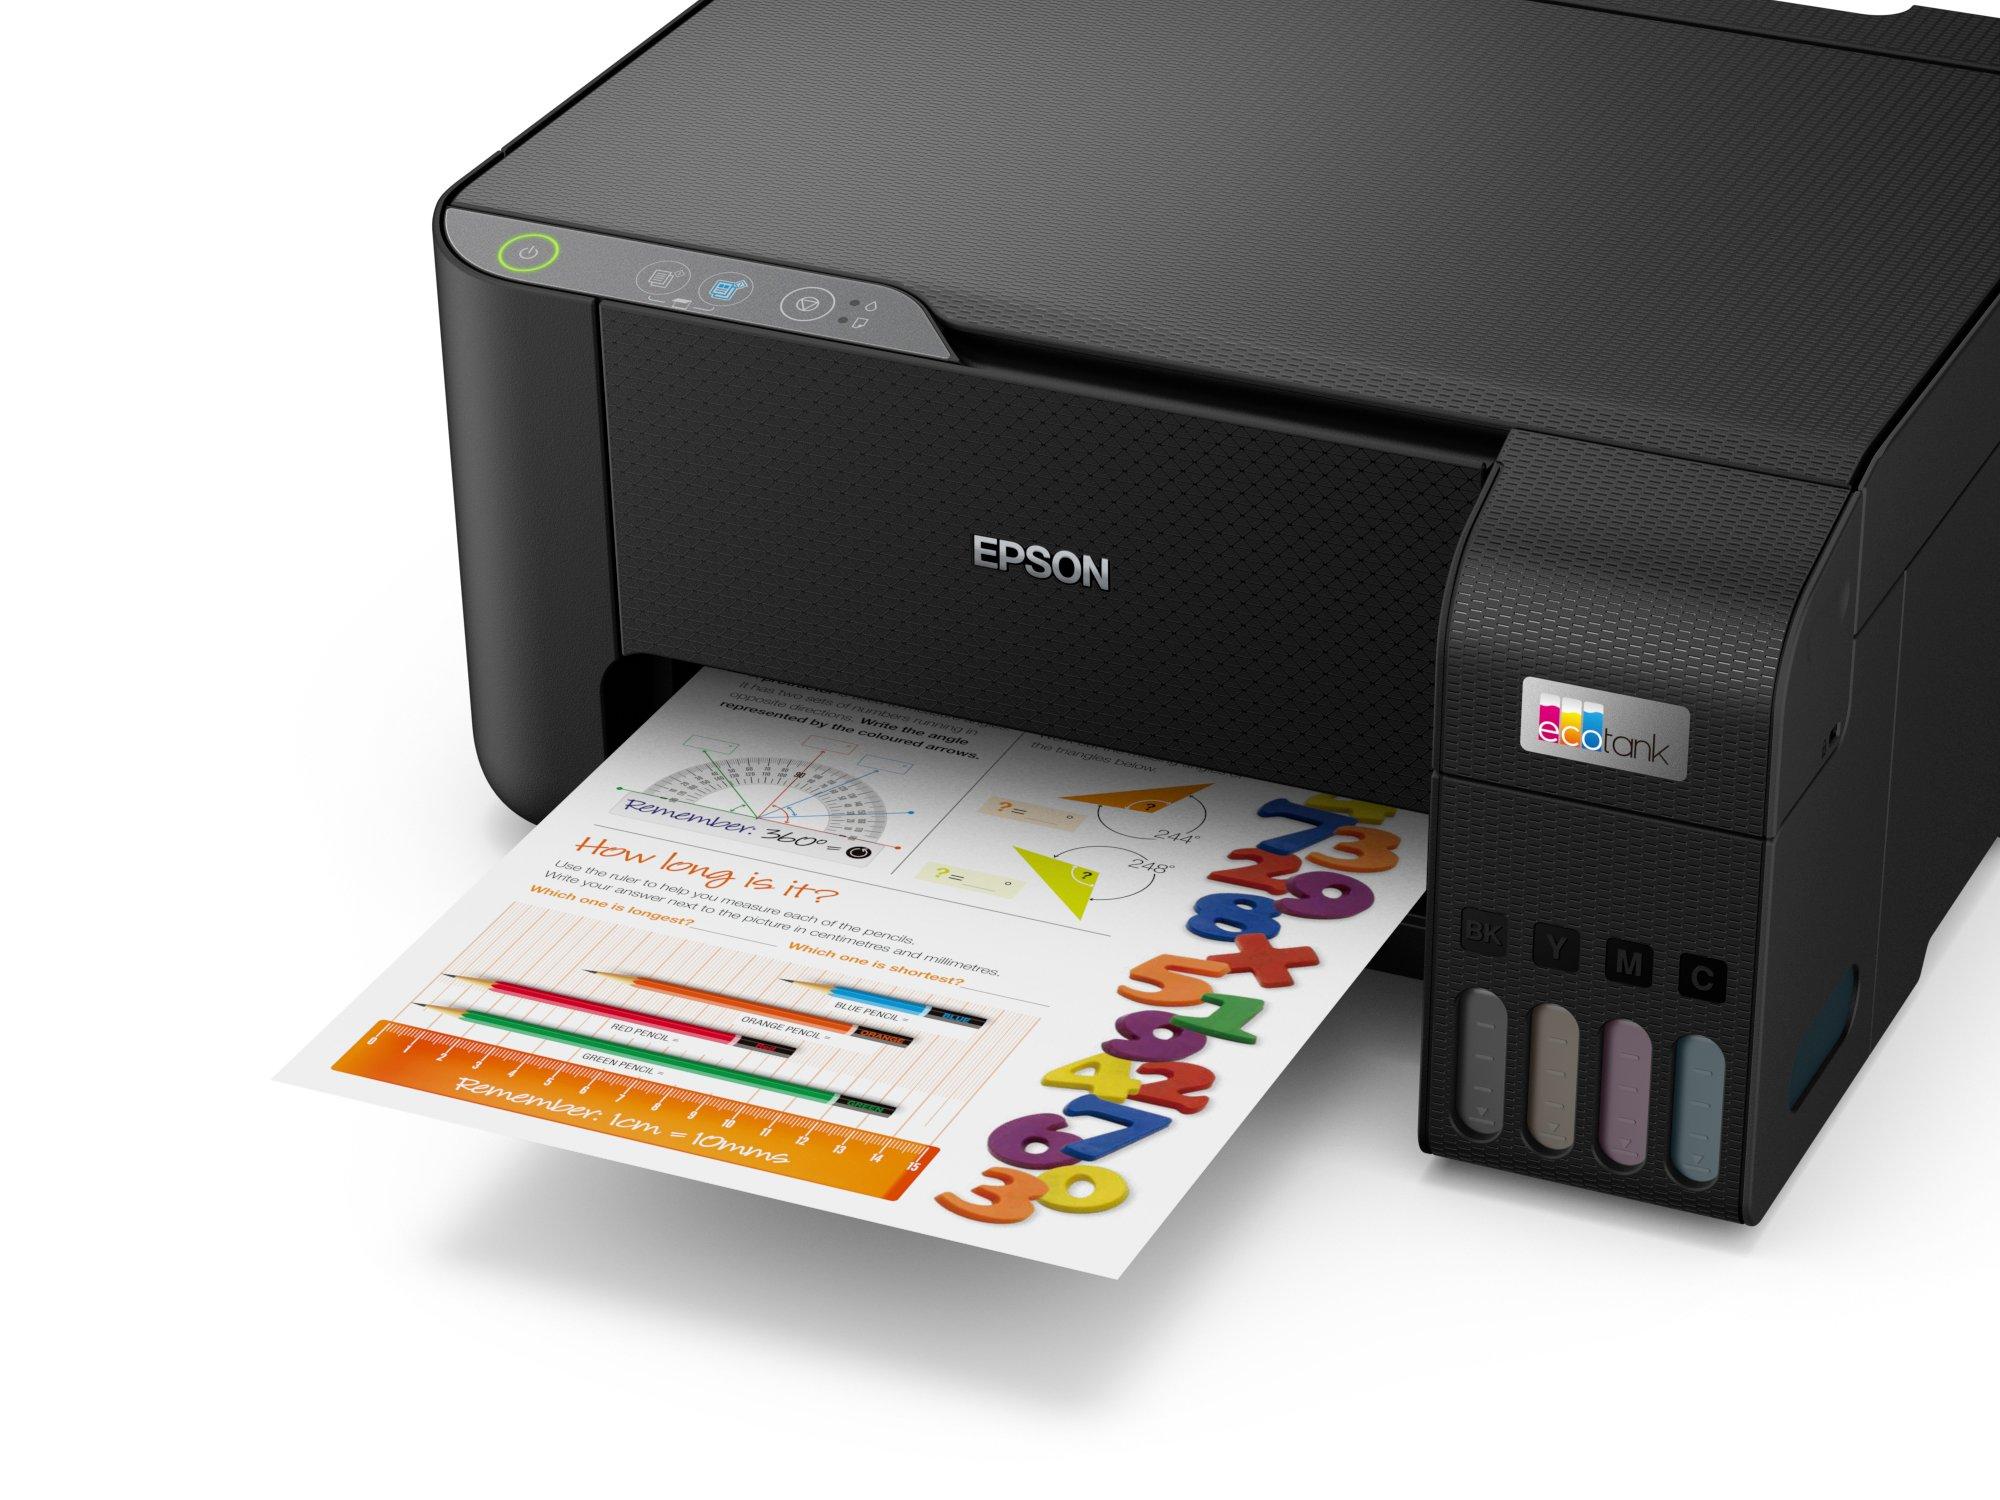 Imprimante Epson L 3210 avec réservoir d’encre Multifonction 3-en-1 couleur  A4